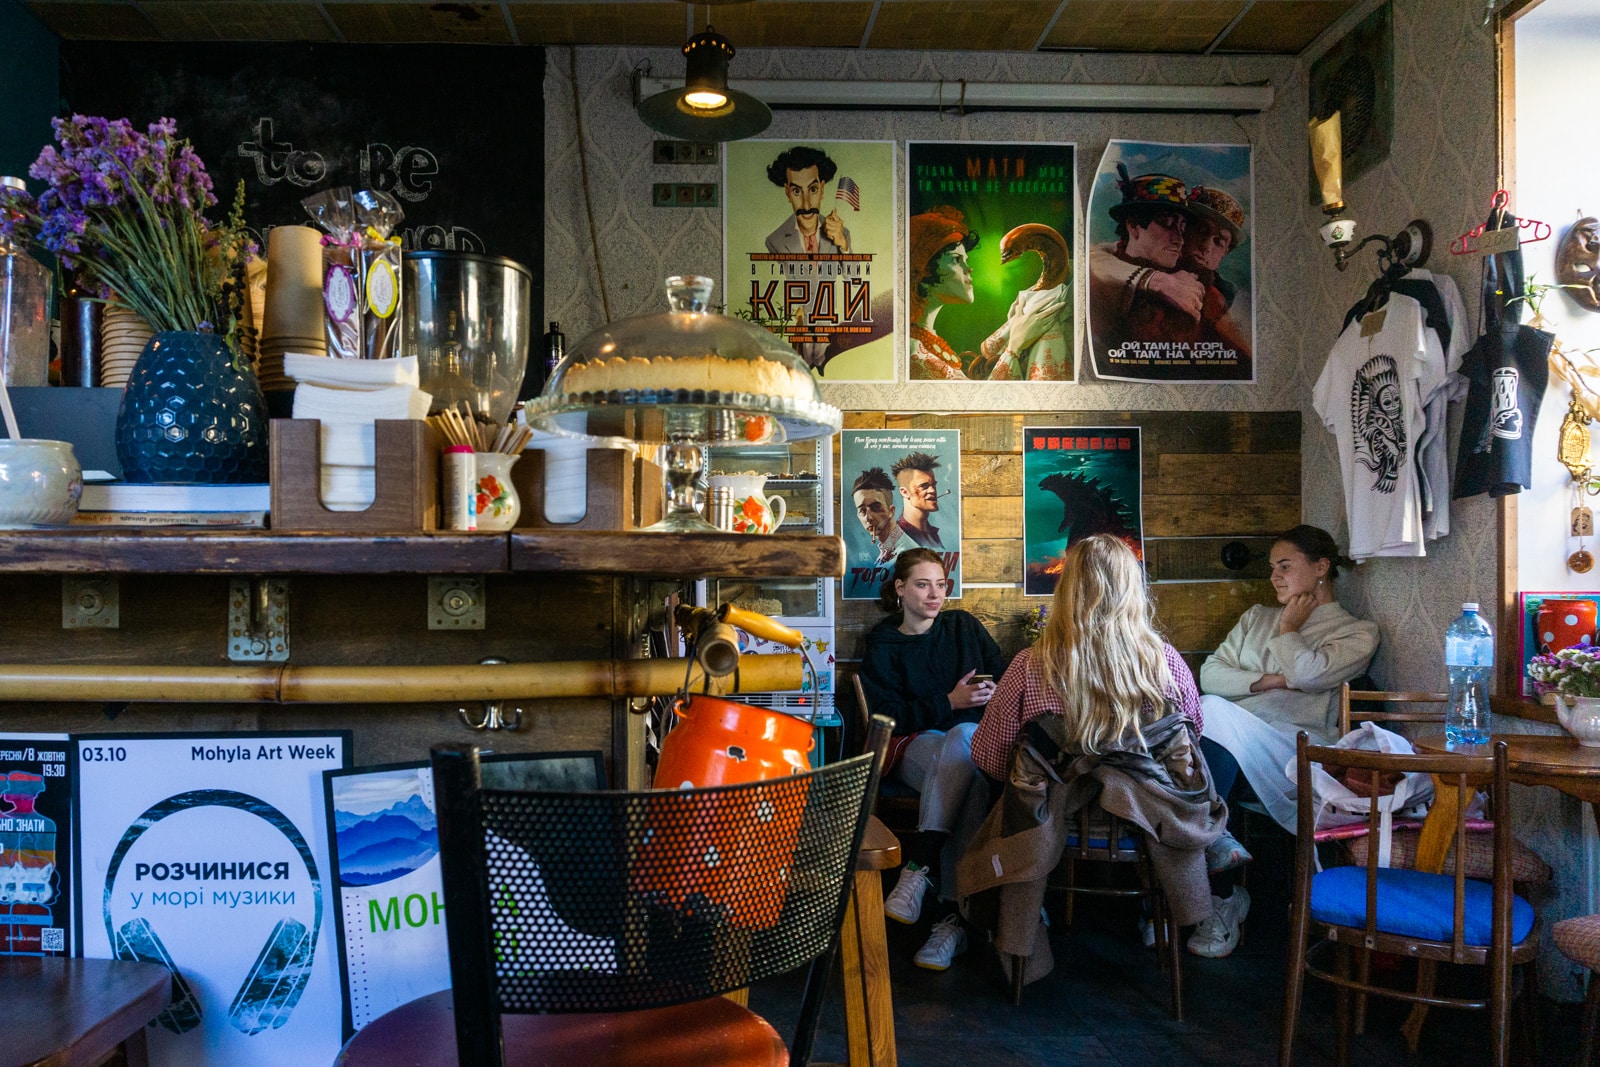 Locals in Vagabond Cafe, Kyiv, Ukraine